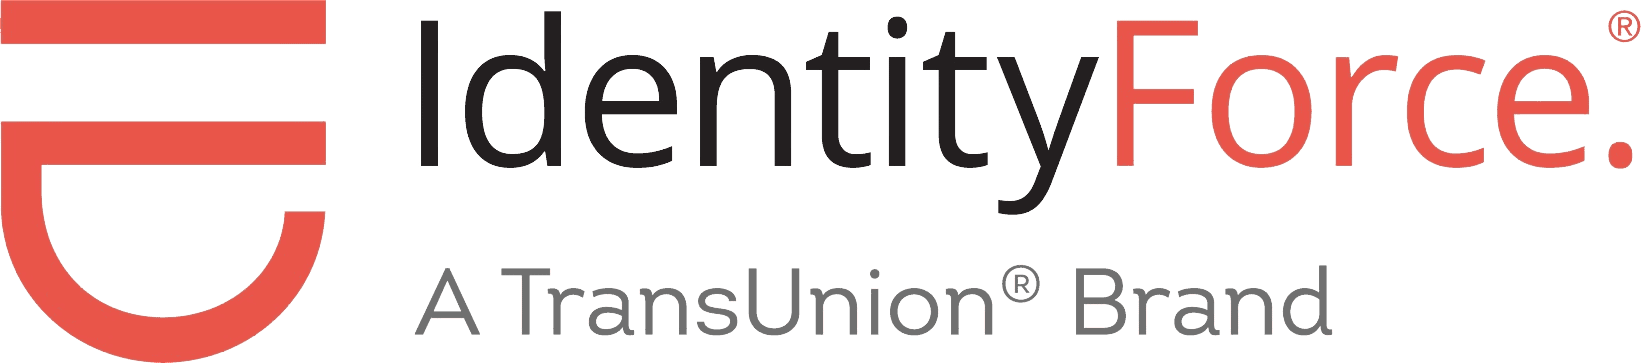 IdentityForce Logo - Product Logo